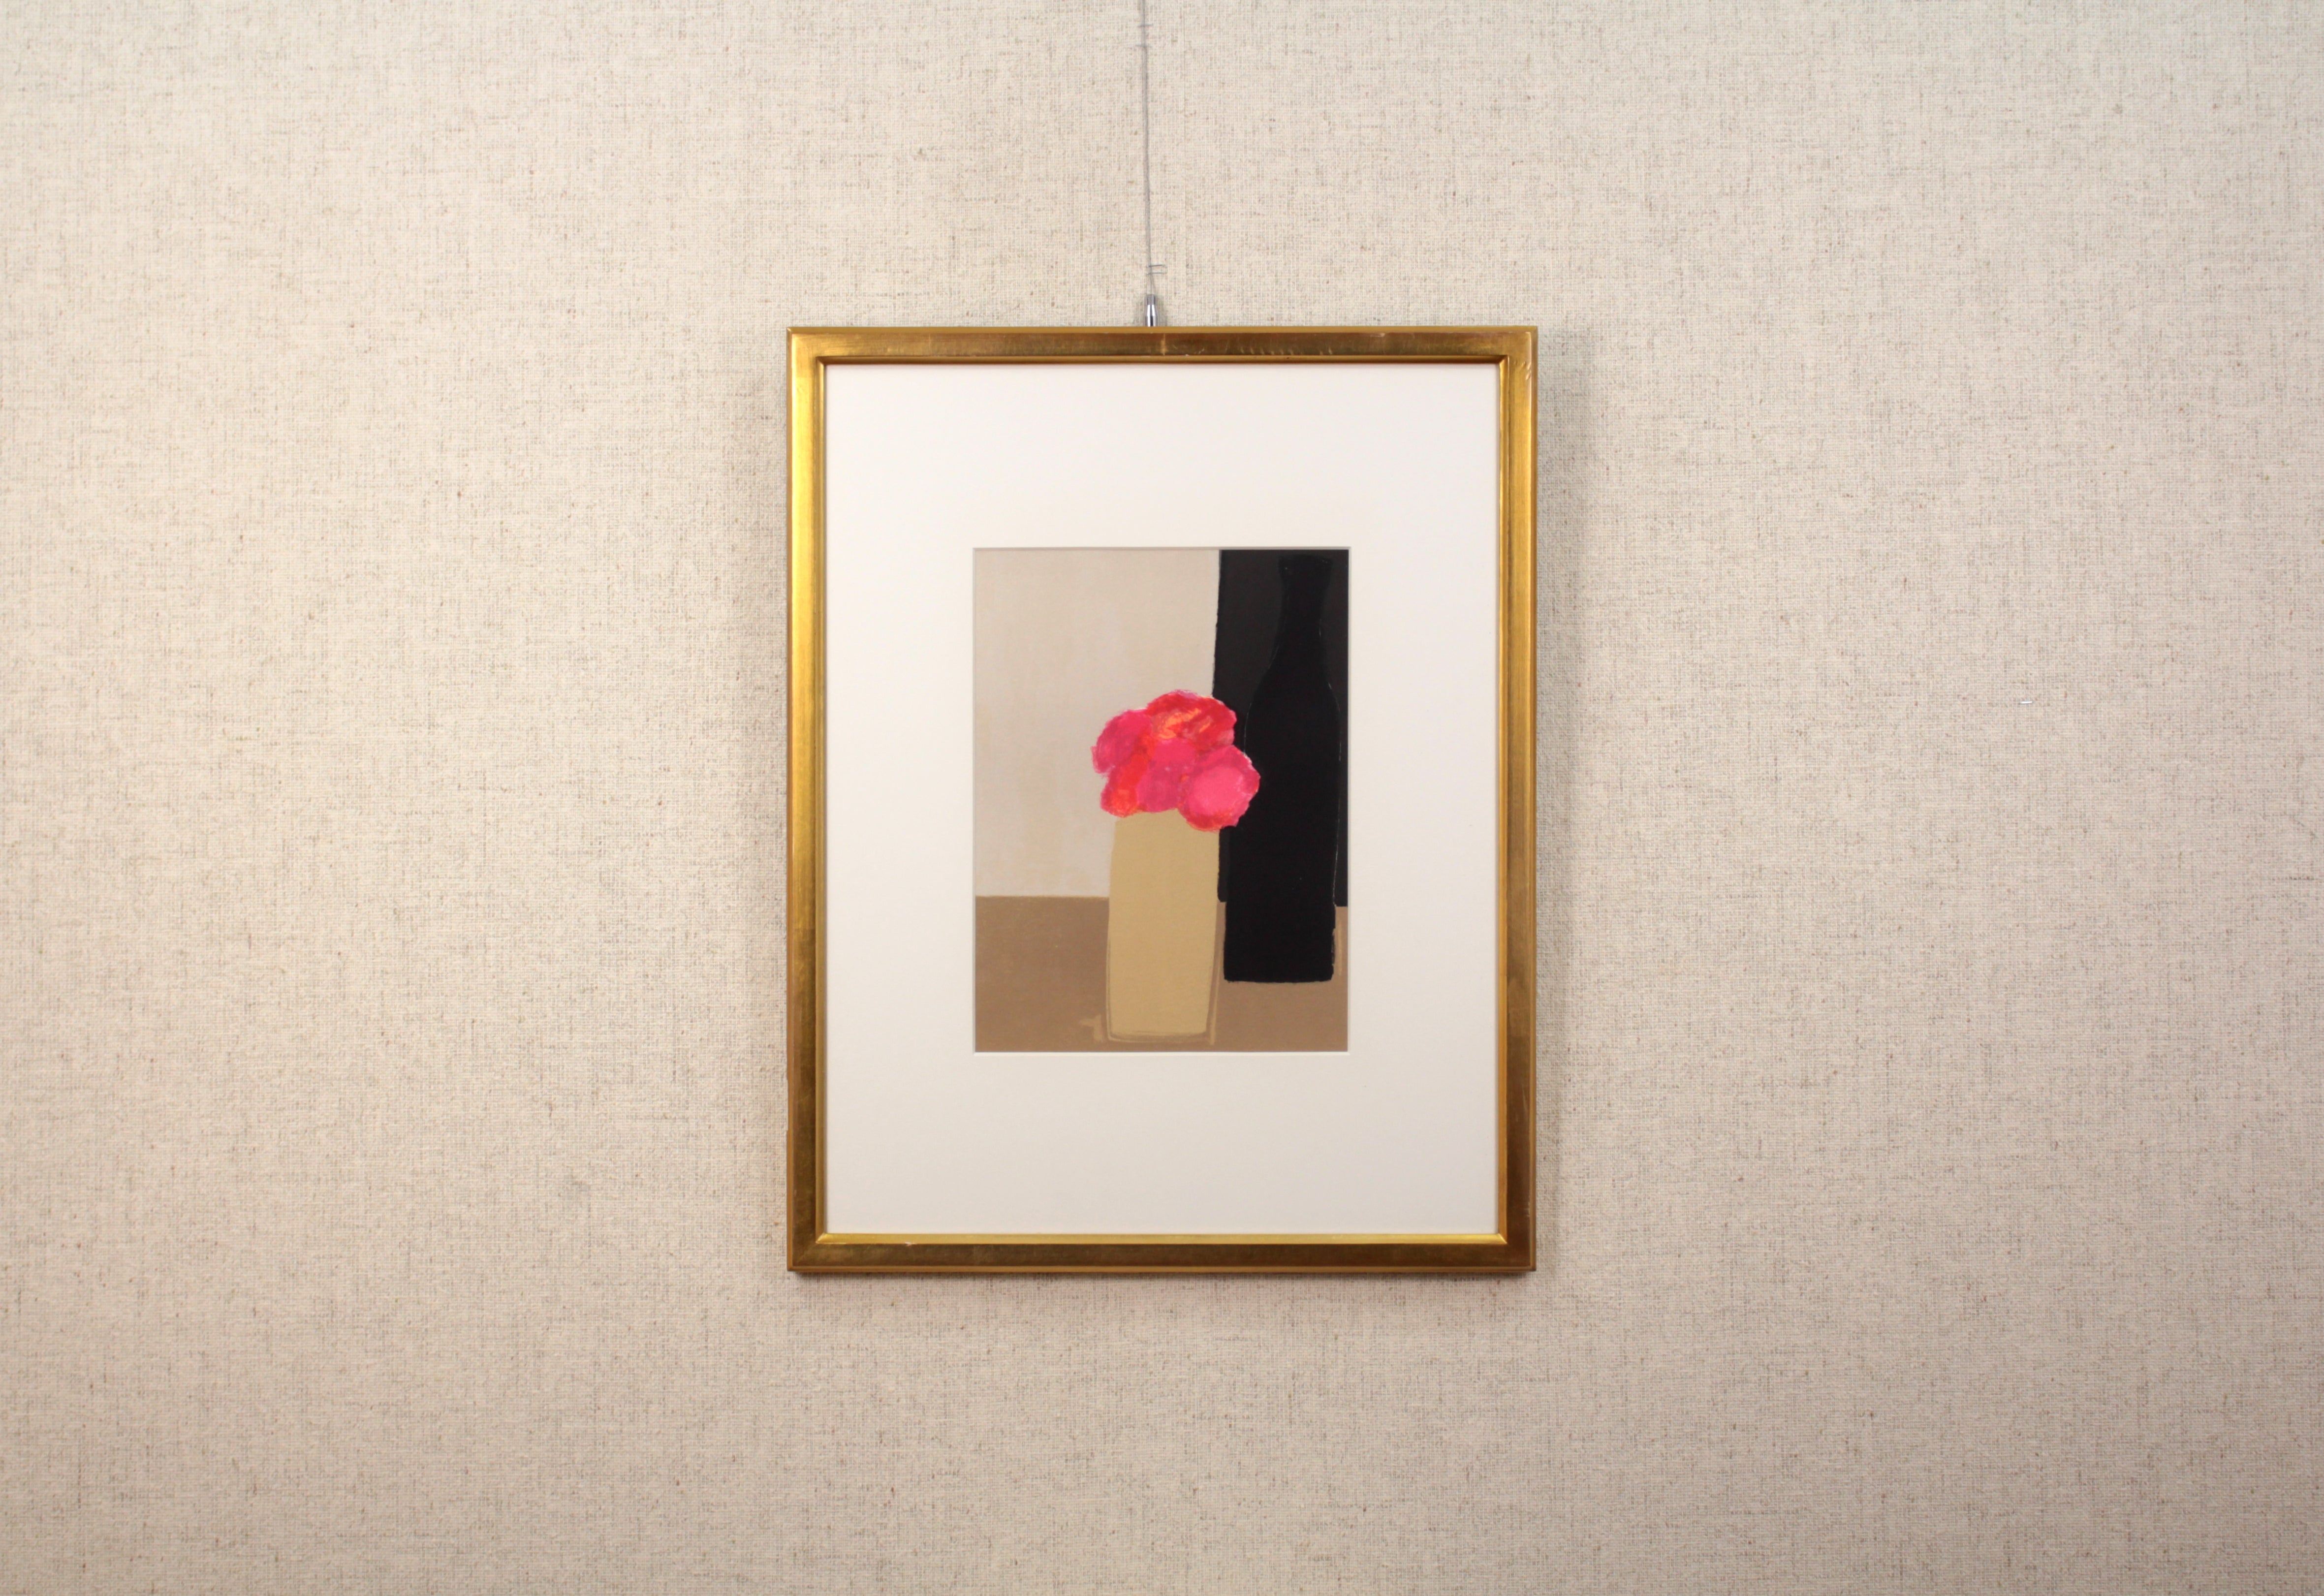 ベルナール・カトラン 『赤い花束』 リトグラフ - 北海道画廊